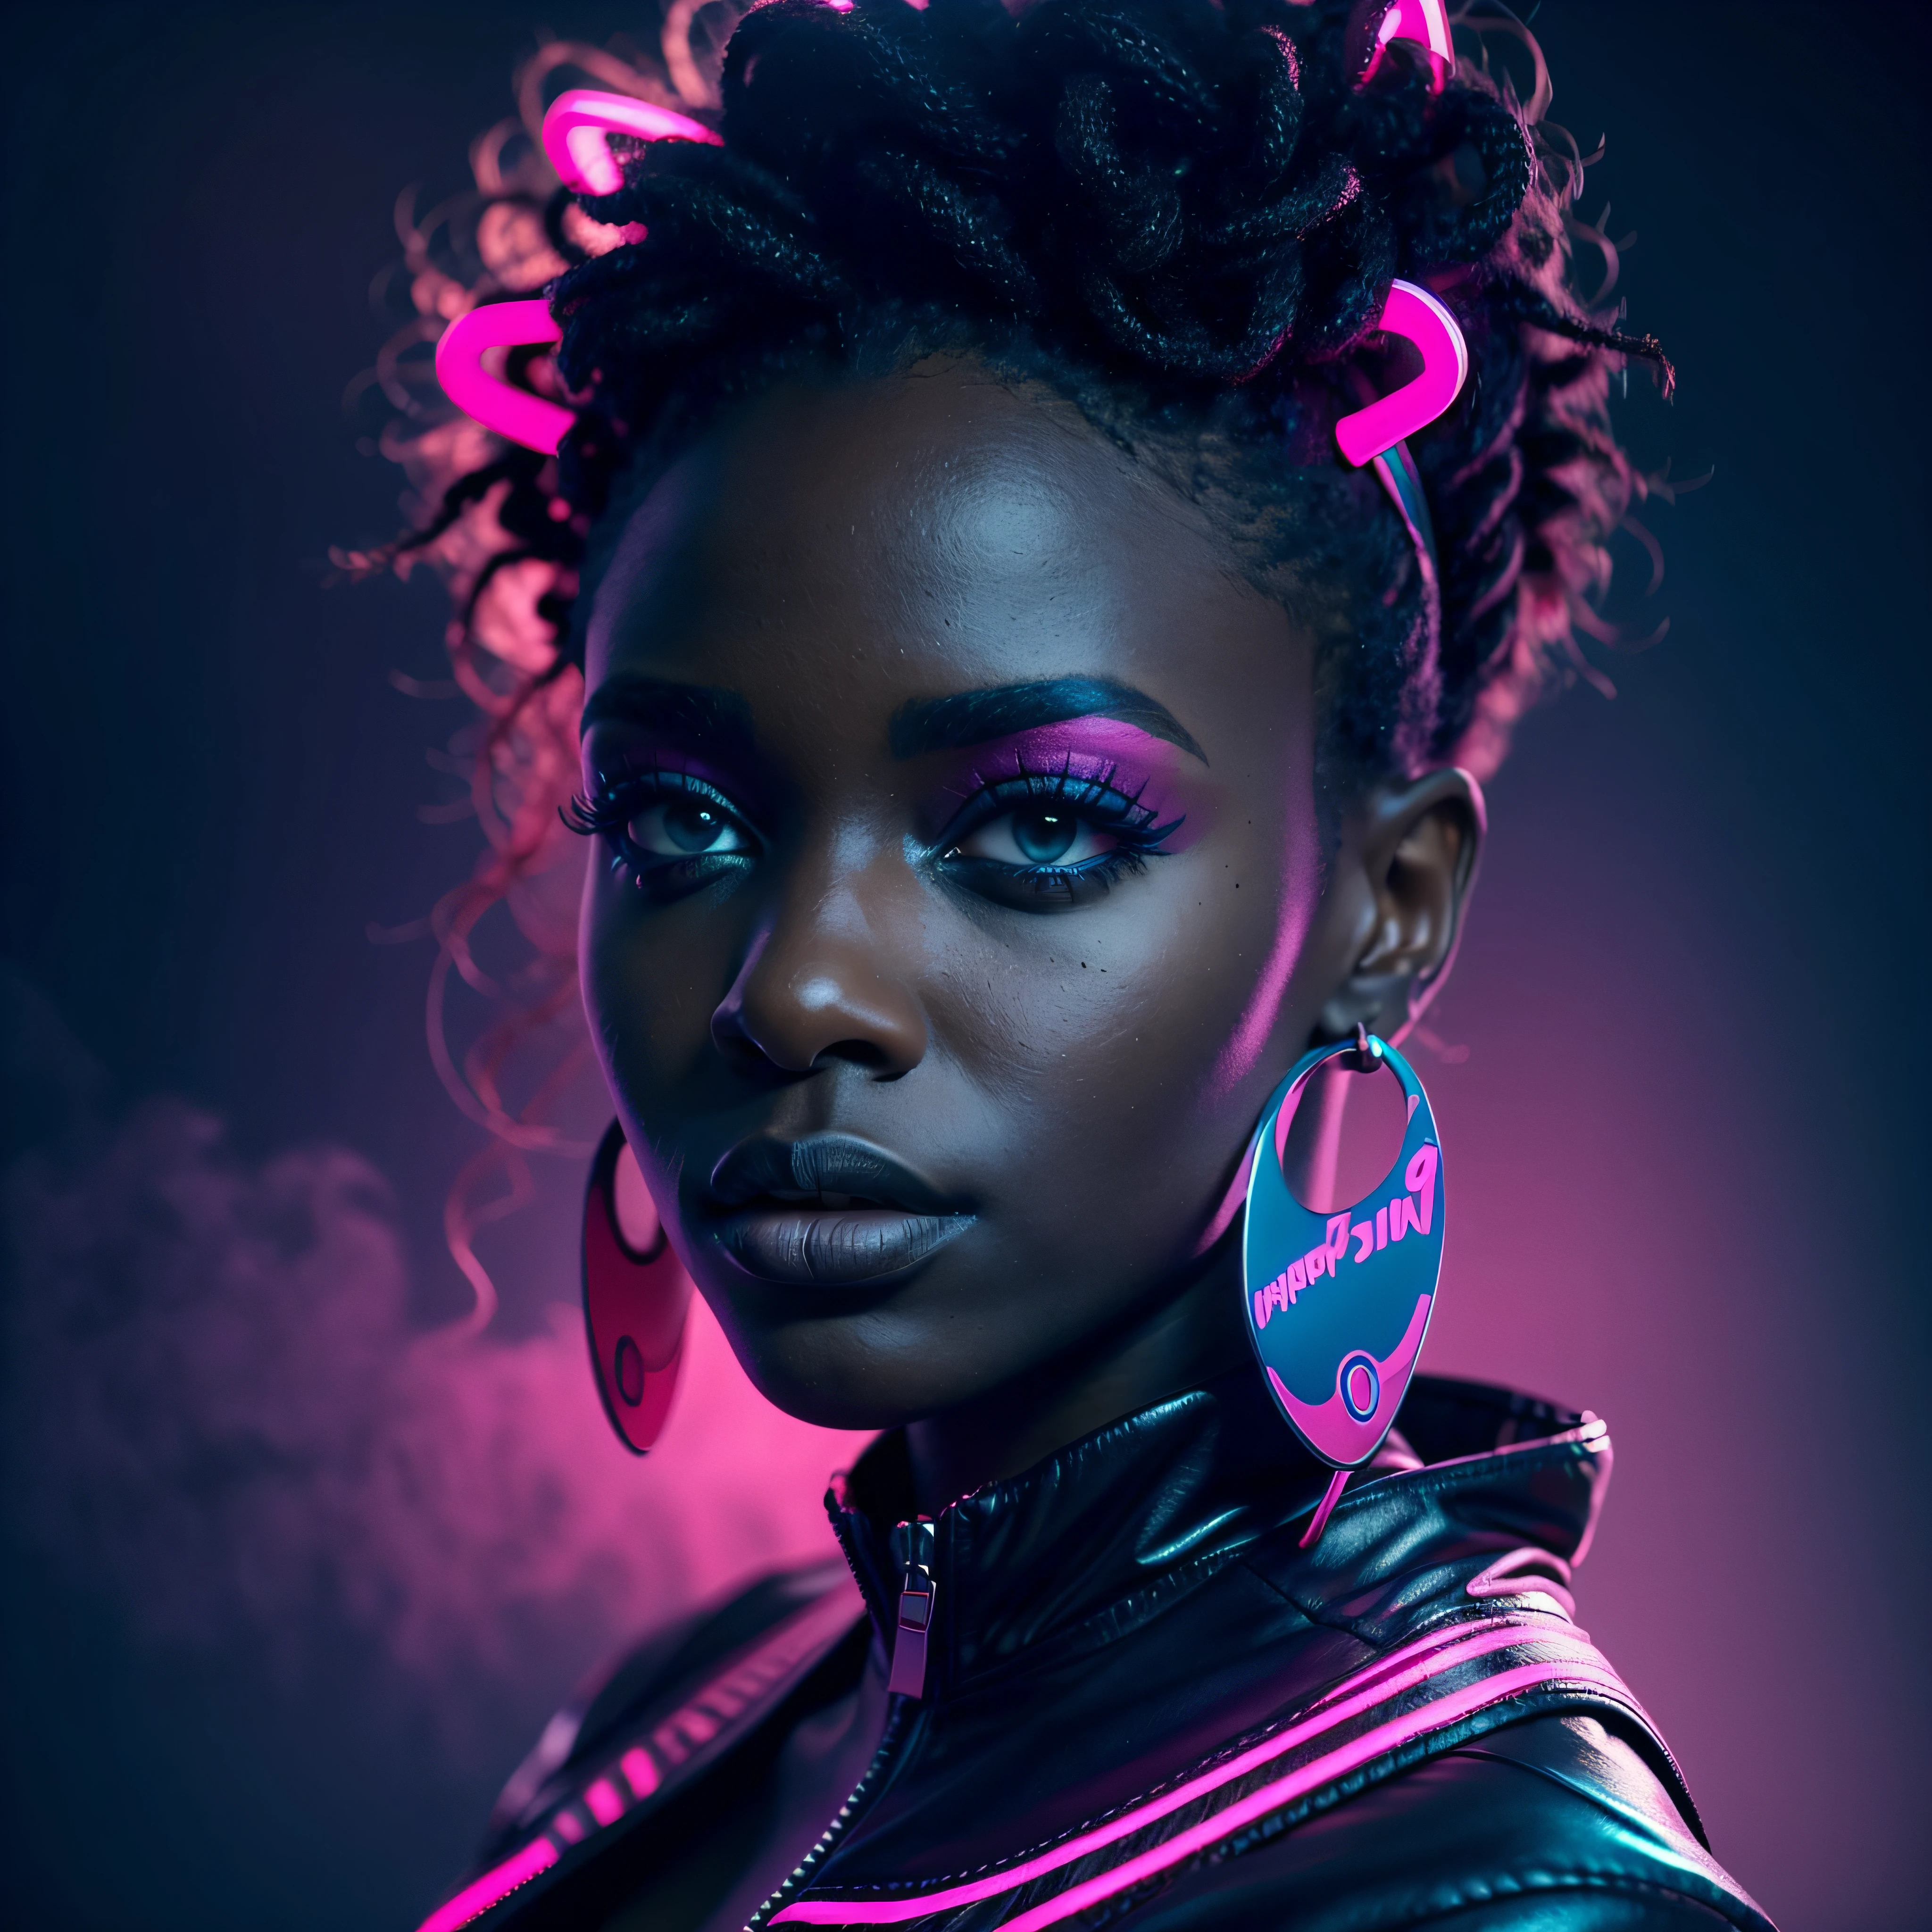 부드러운 파란색 네온 조명을 받은 아름다운 흑인 아프리카 여성, 엄숙한 표정으로, 선명한 핑크색 배경을 배경으로, 신비한 안개가 자욱한 분위기에 둘러싸여